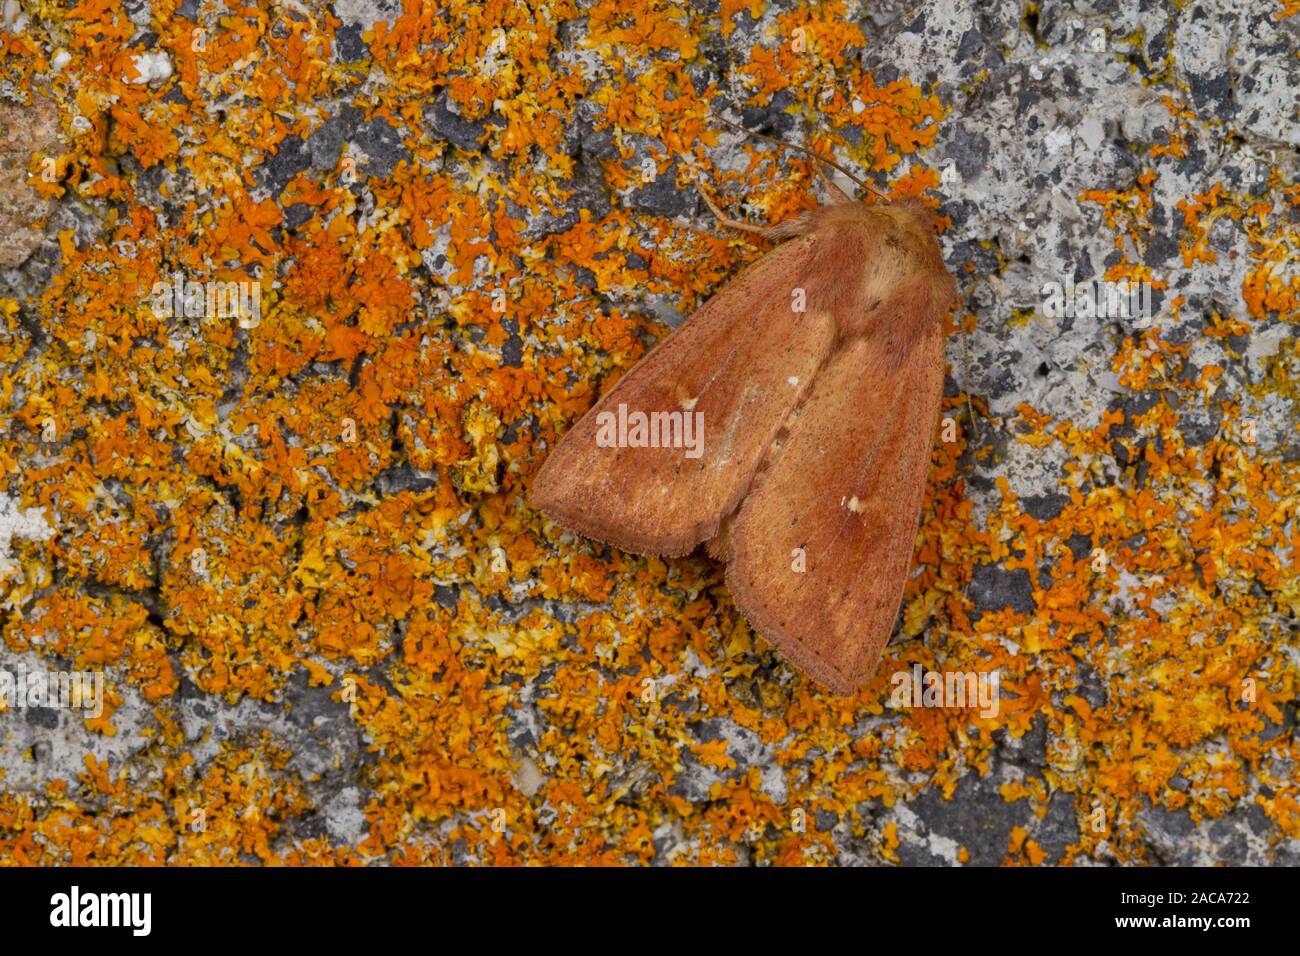 Der Ton (míthymna ferrago) erwachsenen Motten auf Flechten ruht. Powys, Wales. Juli. Stockfoto